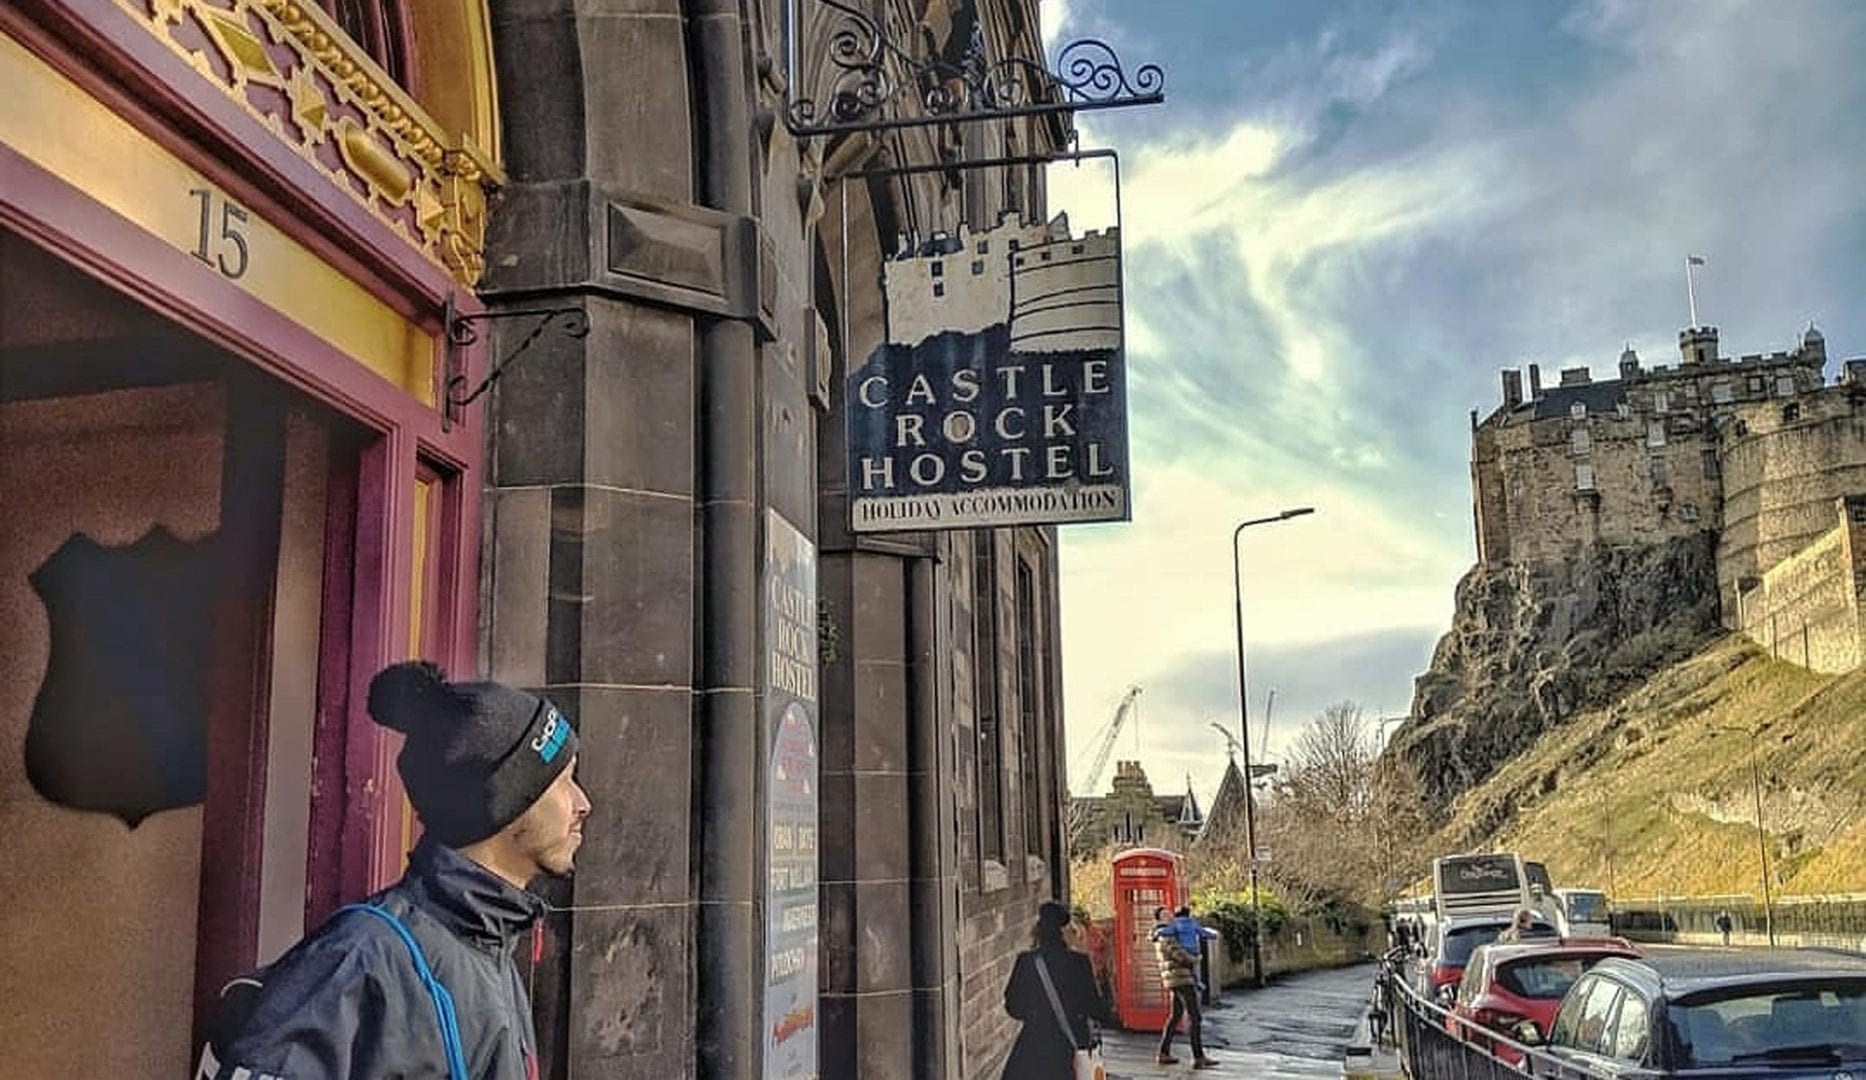 castle rock hostel by Edinburgh castle